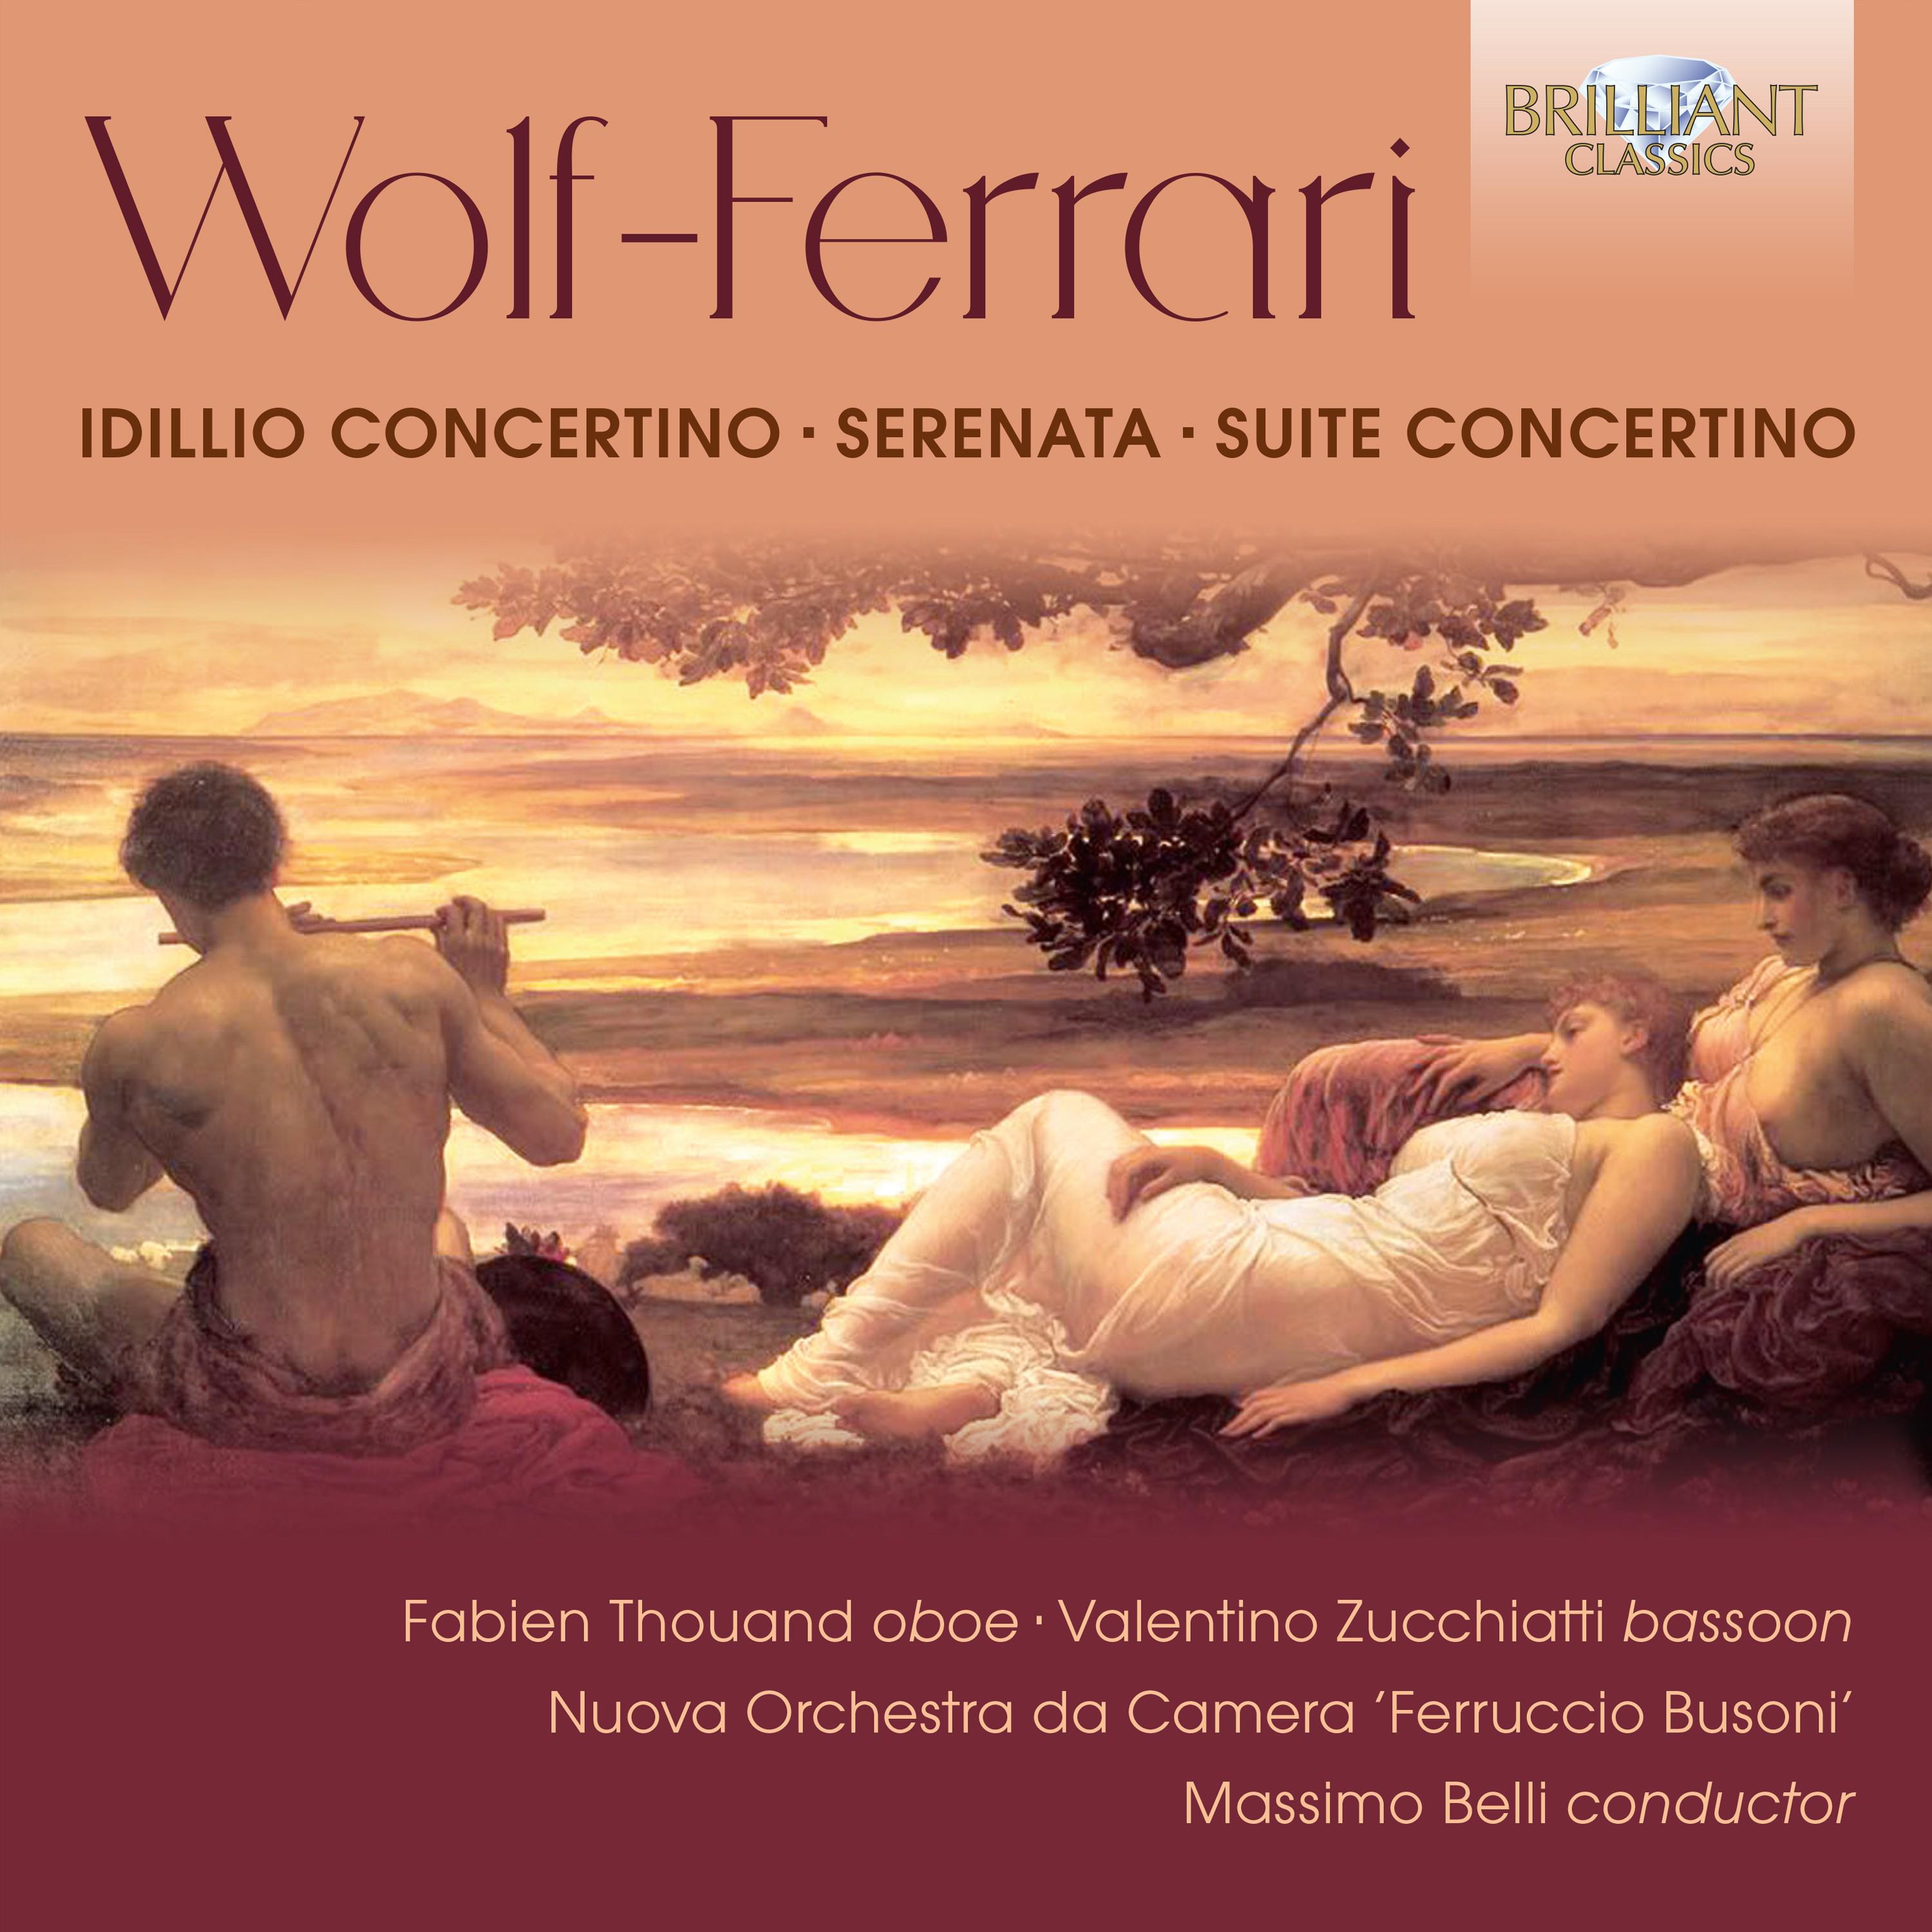 Idillio - Concertino in A Major, Op. 15: II. Scherzo - Presto